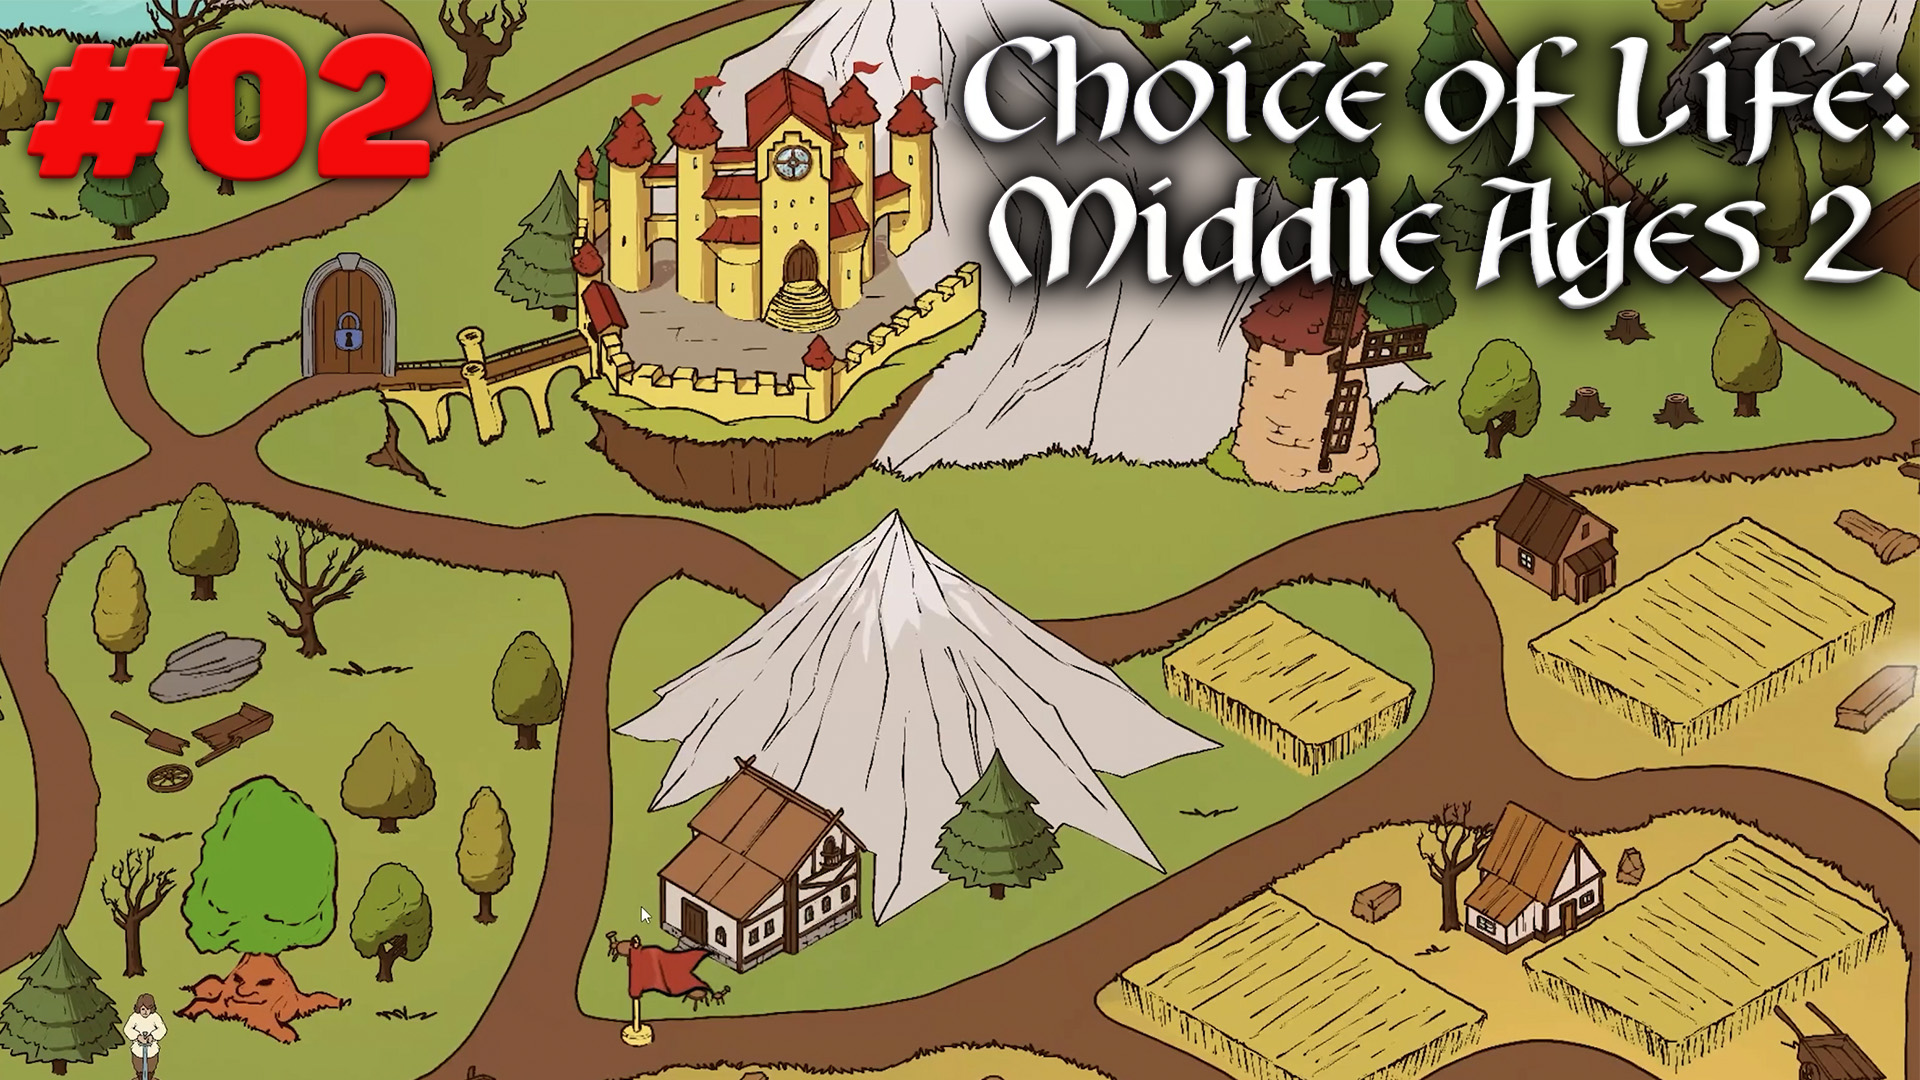 Choice of life middle андроид. The choice of Life Middle ages игра. Choice of Life: Middle ages 2. Серпантина choice of Life Middle ages 2. Choice of Life: Middle ages 2 Элис.